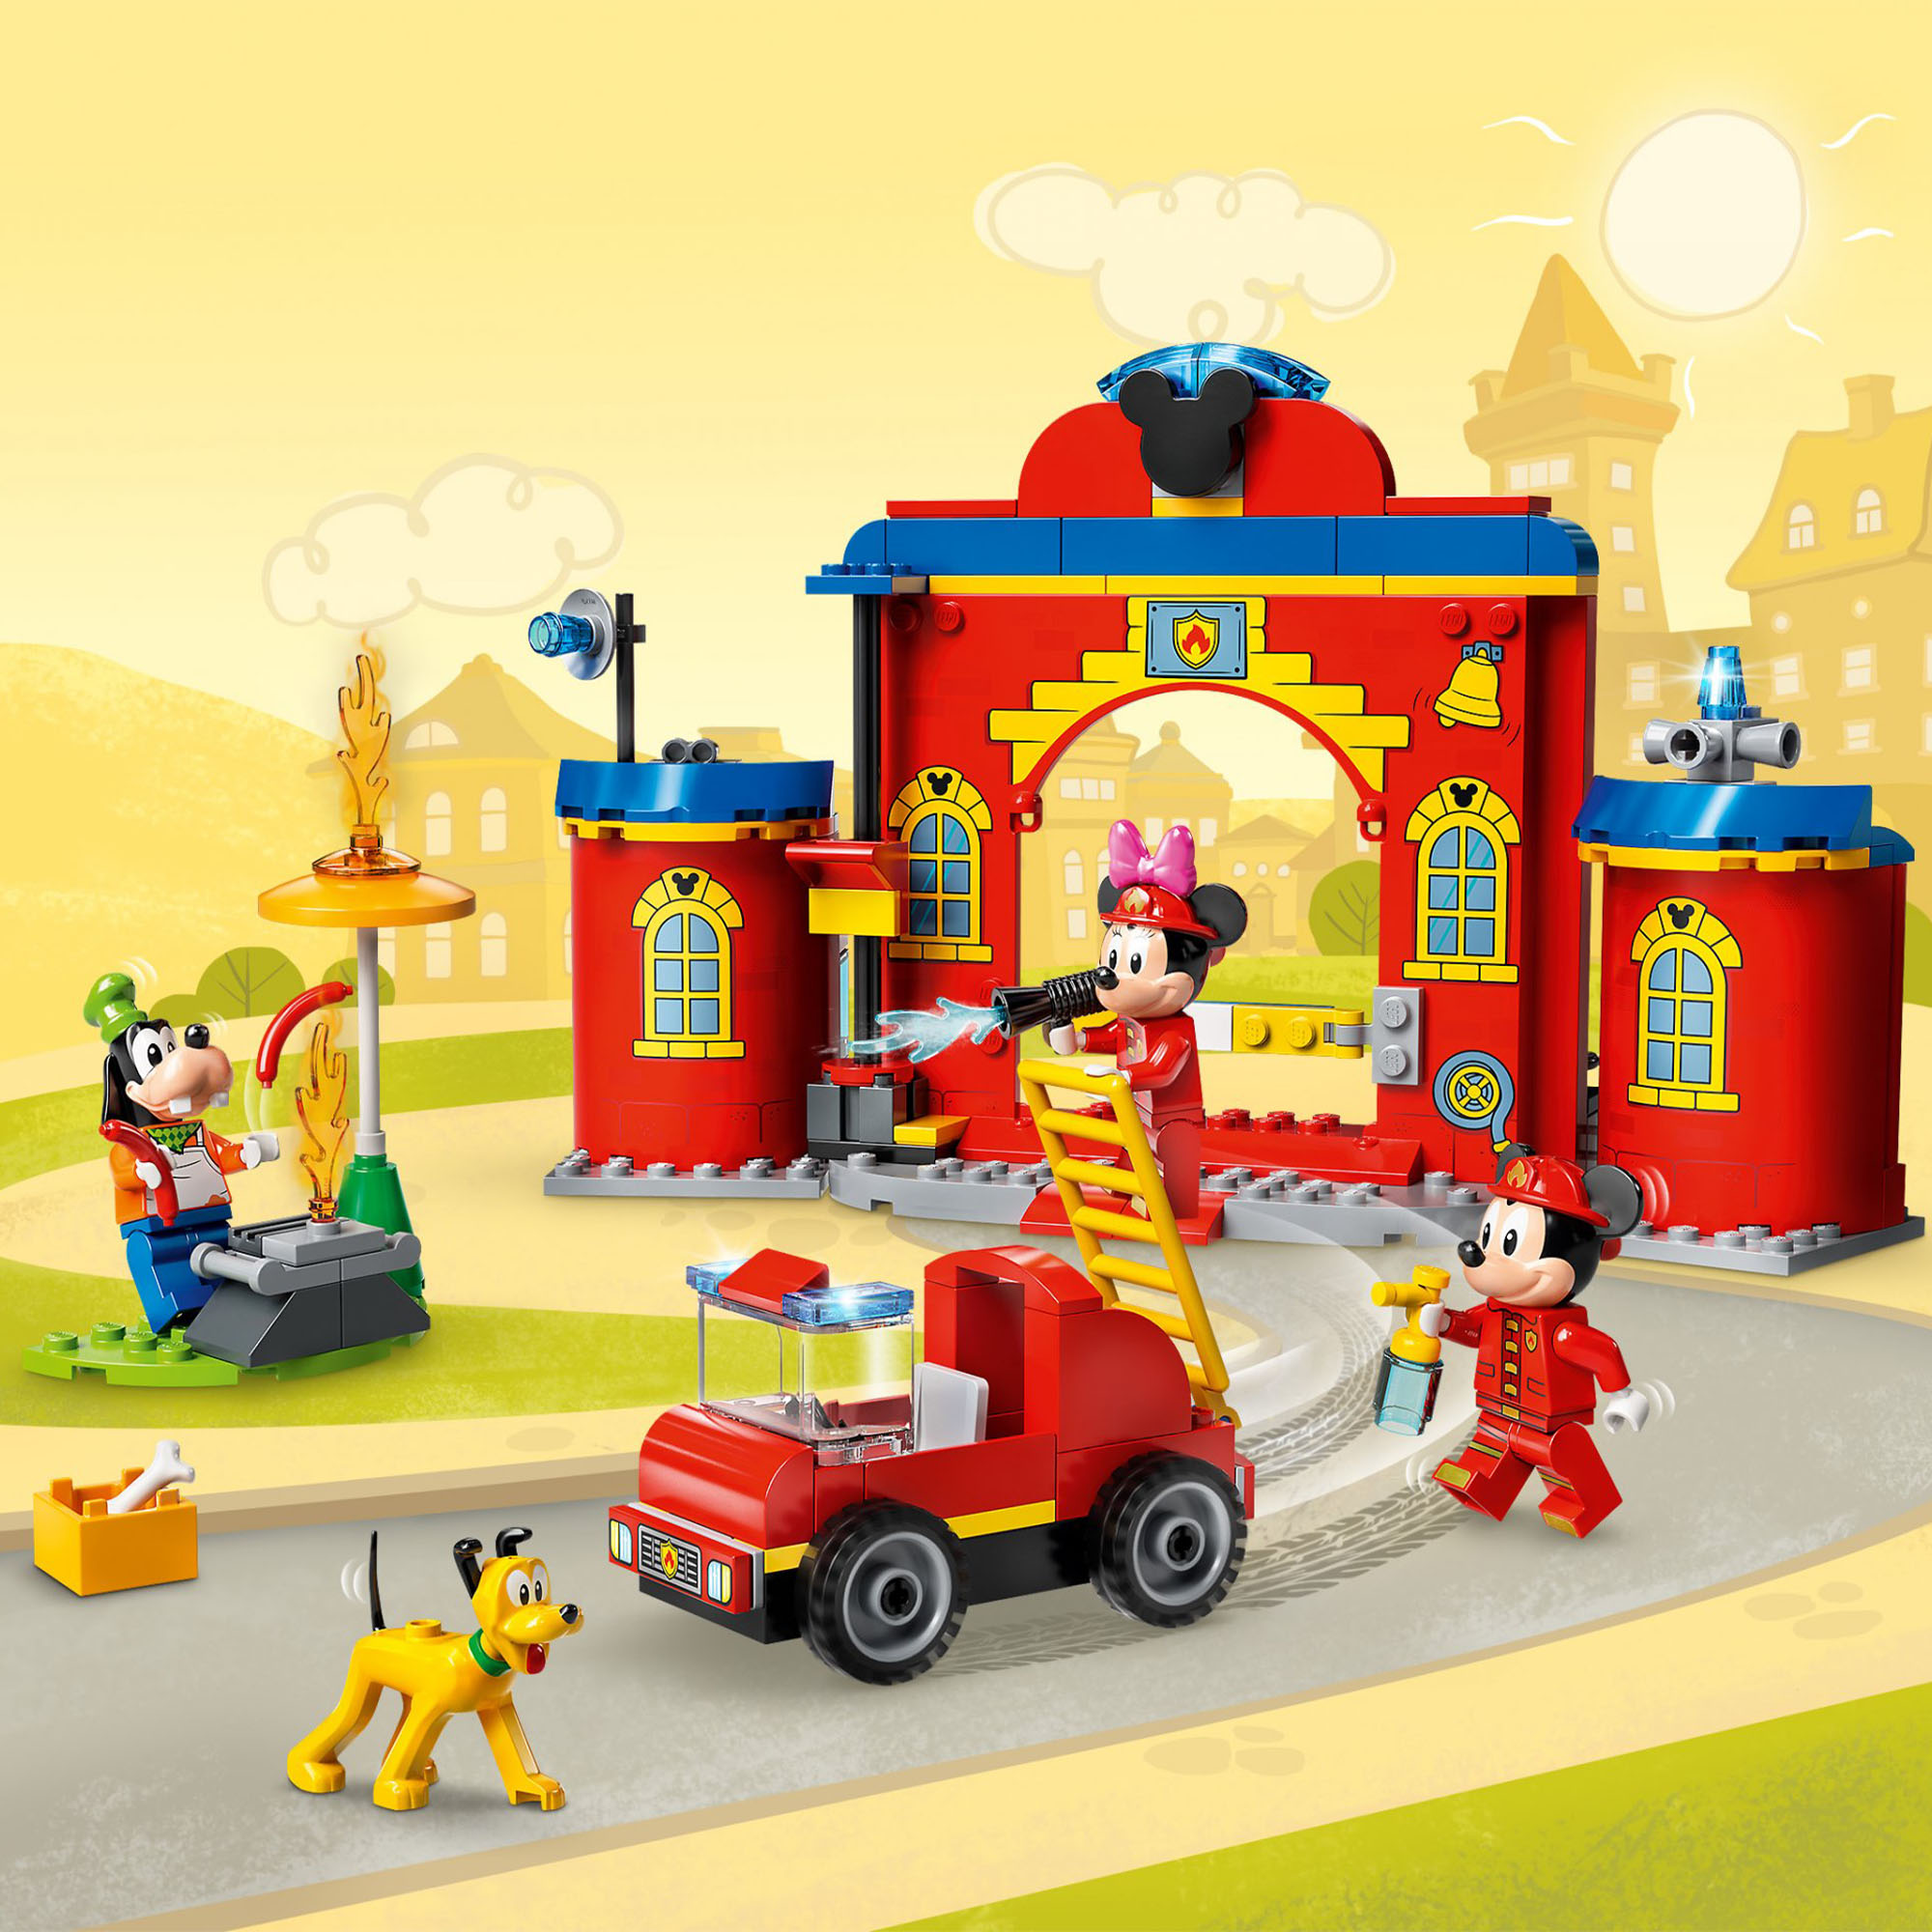 LEGO Disney Mickey and Friends Autopompa e Caserma di Topolino e i Suoi Amici co 10776, , large